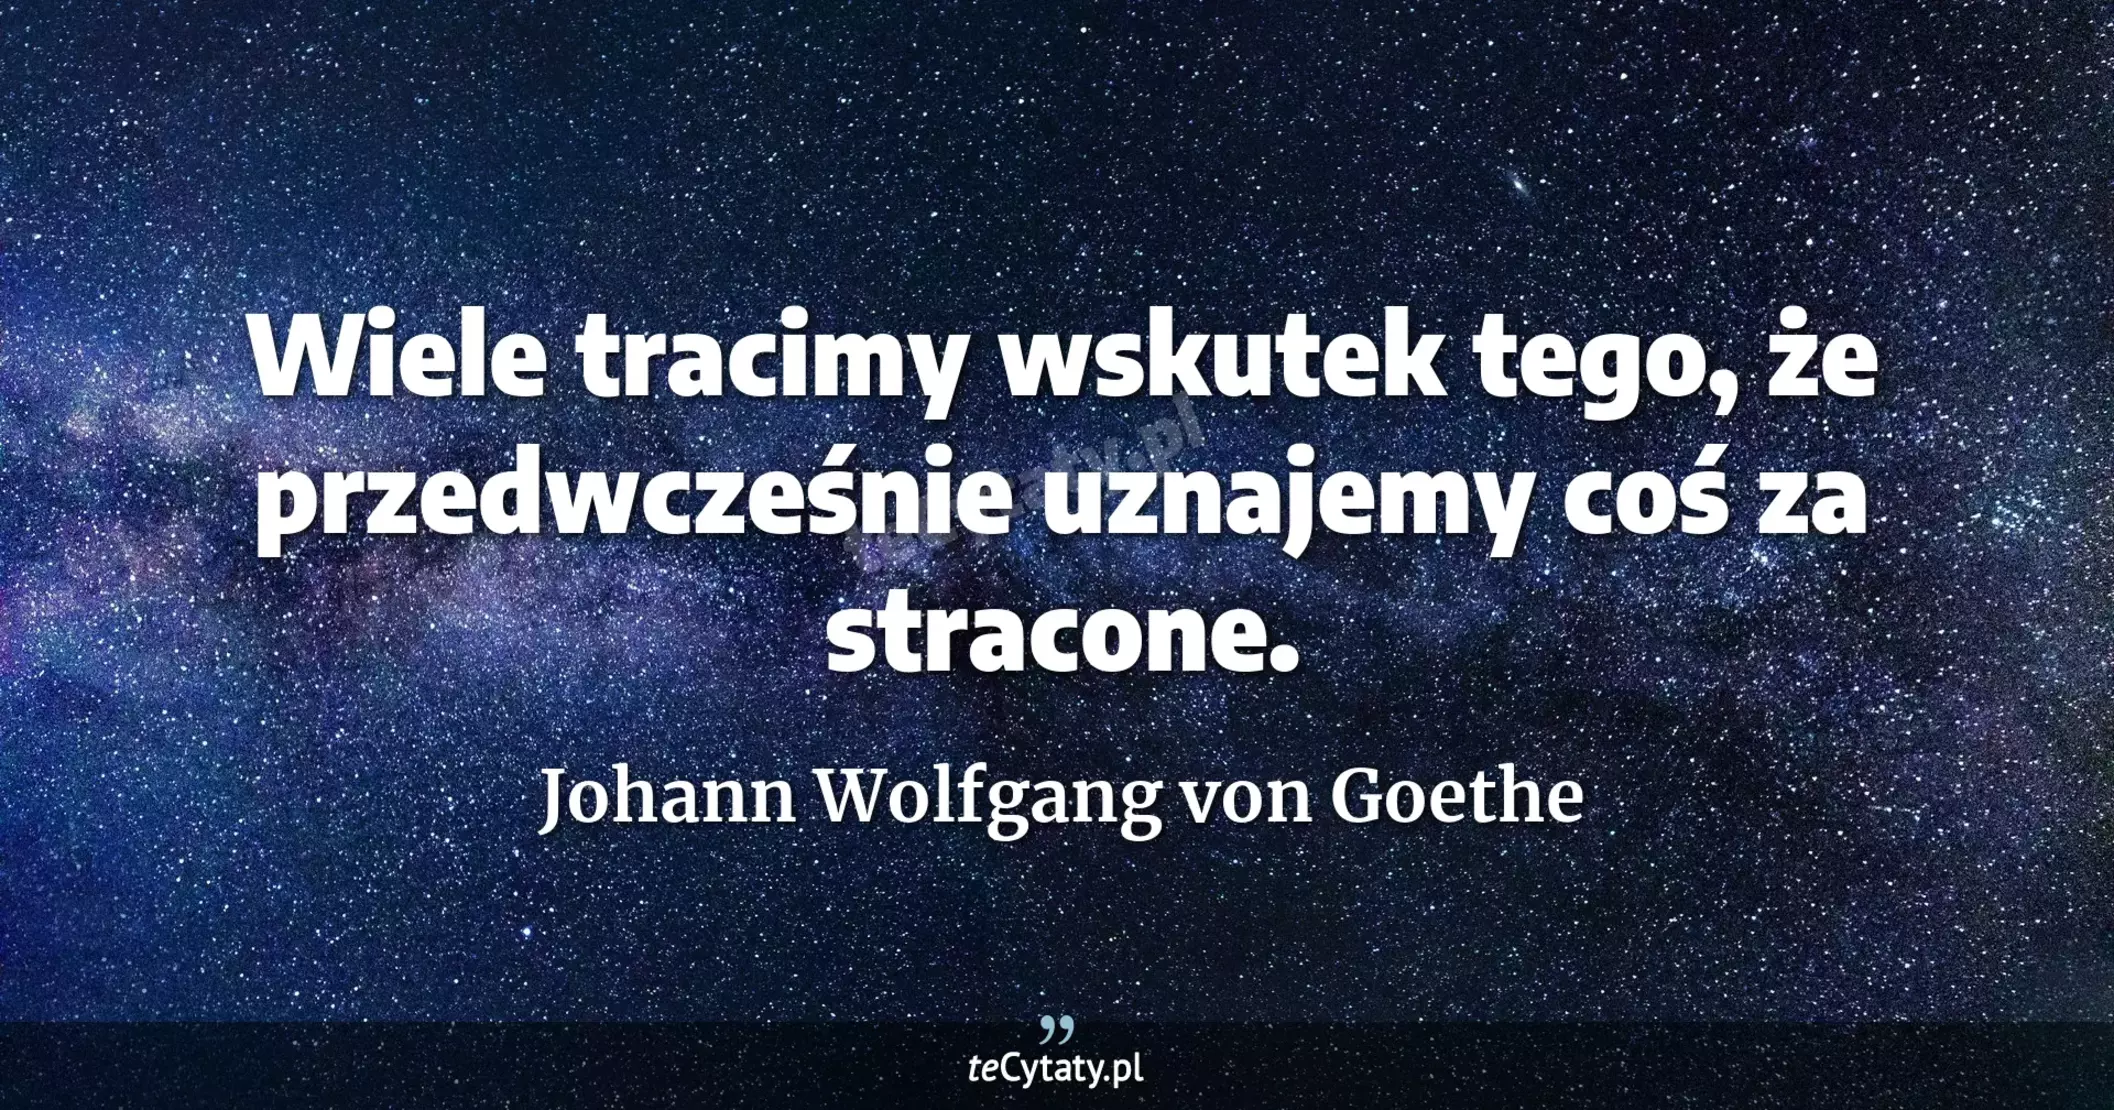 Wiele tracimy wskutek tego, że przedwcześnie uznajemy coś za stracone. - Johann Wolfgang von Goethe